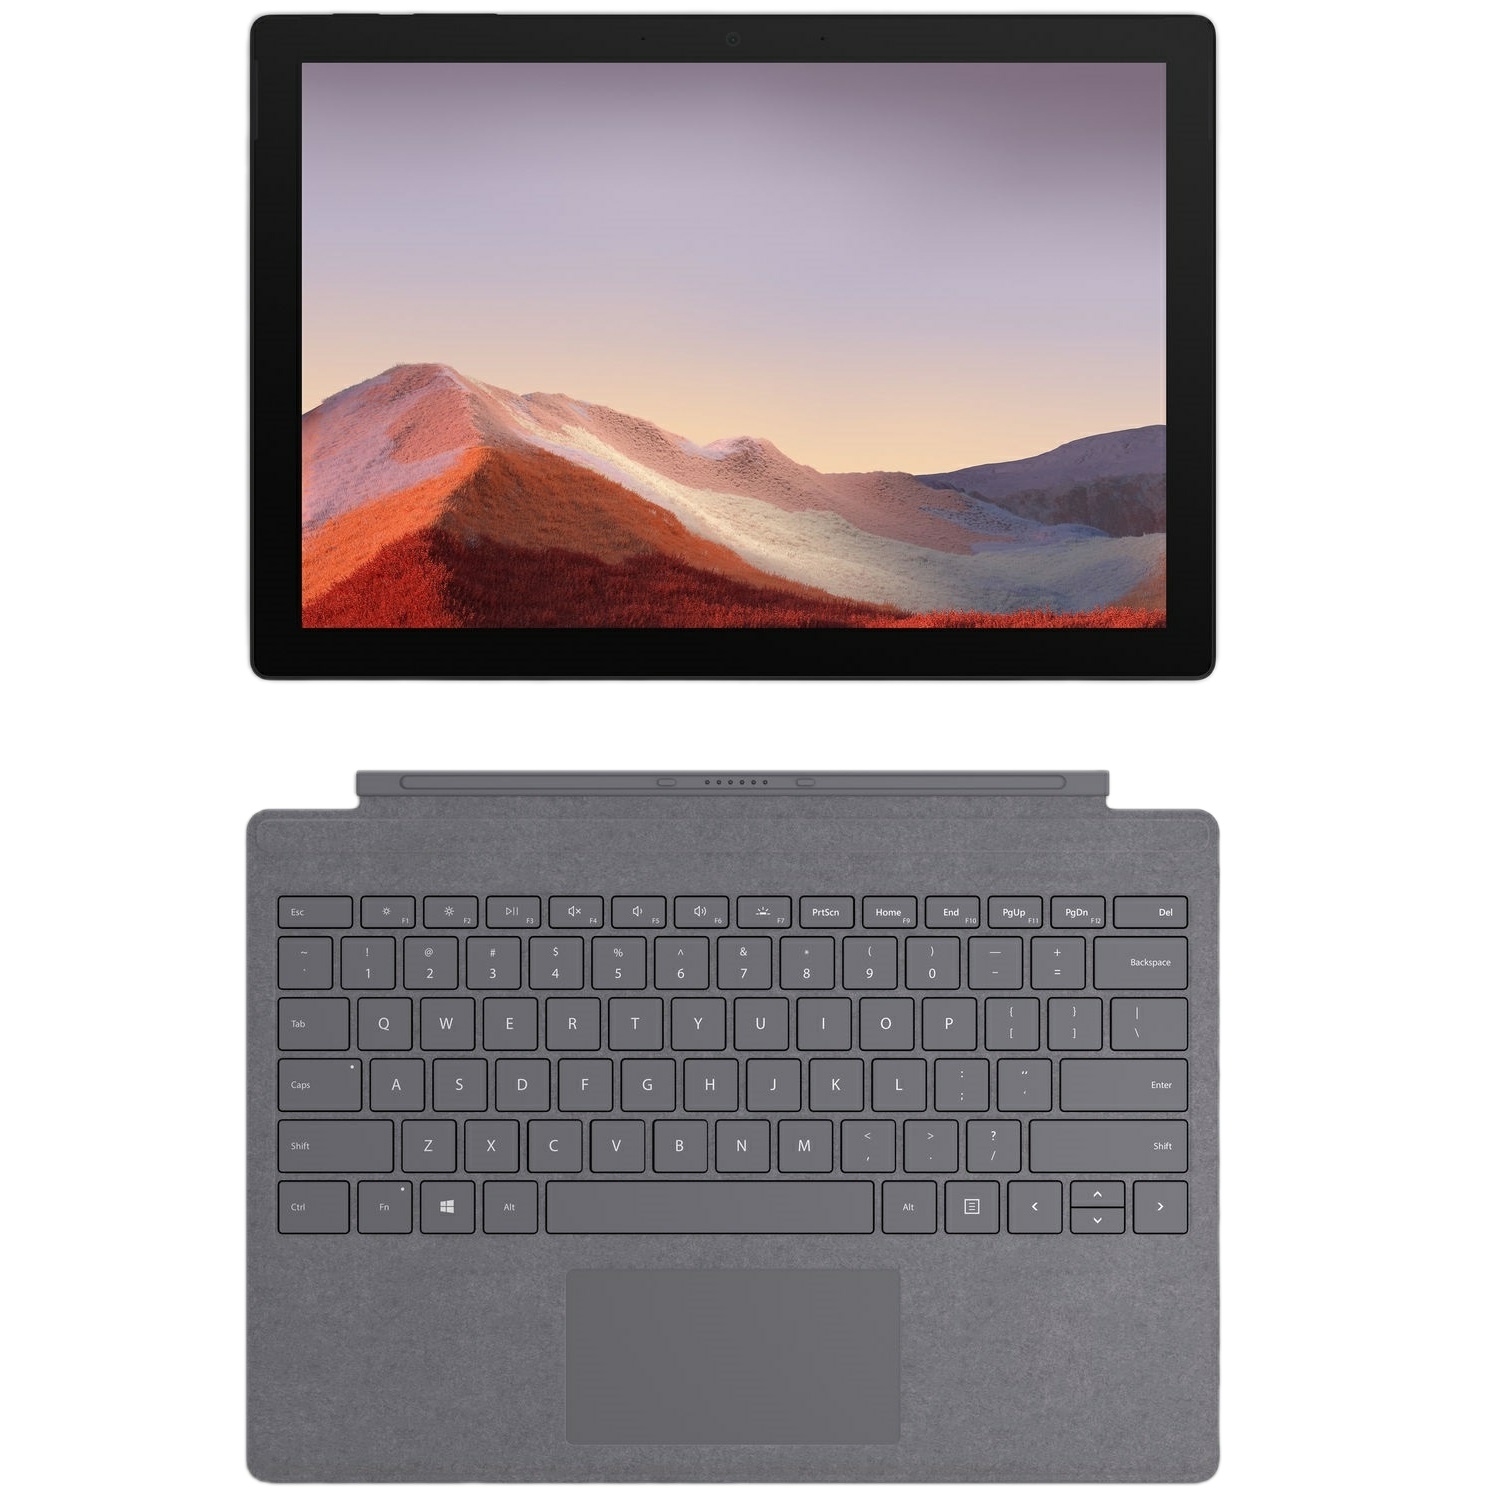 فروش نقدی و اقساطی تبلت مایکروسافت مدل Surface Pro 7 Plus - LTE ظرفیت 256 گیگابایت به همراه کیبورد Signature Type Cover